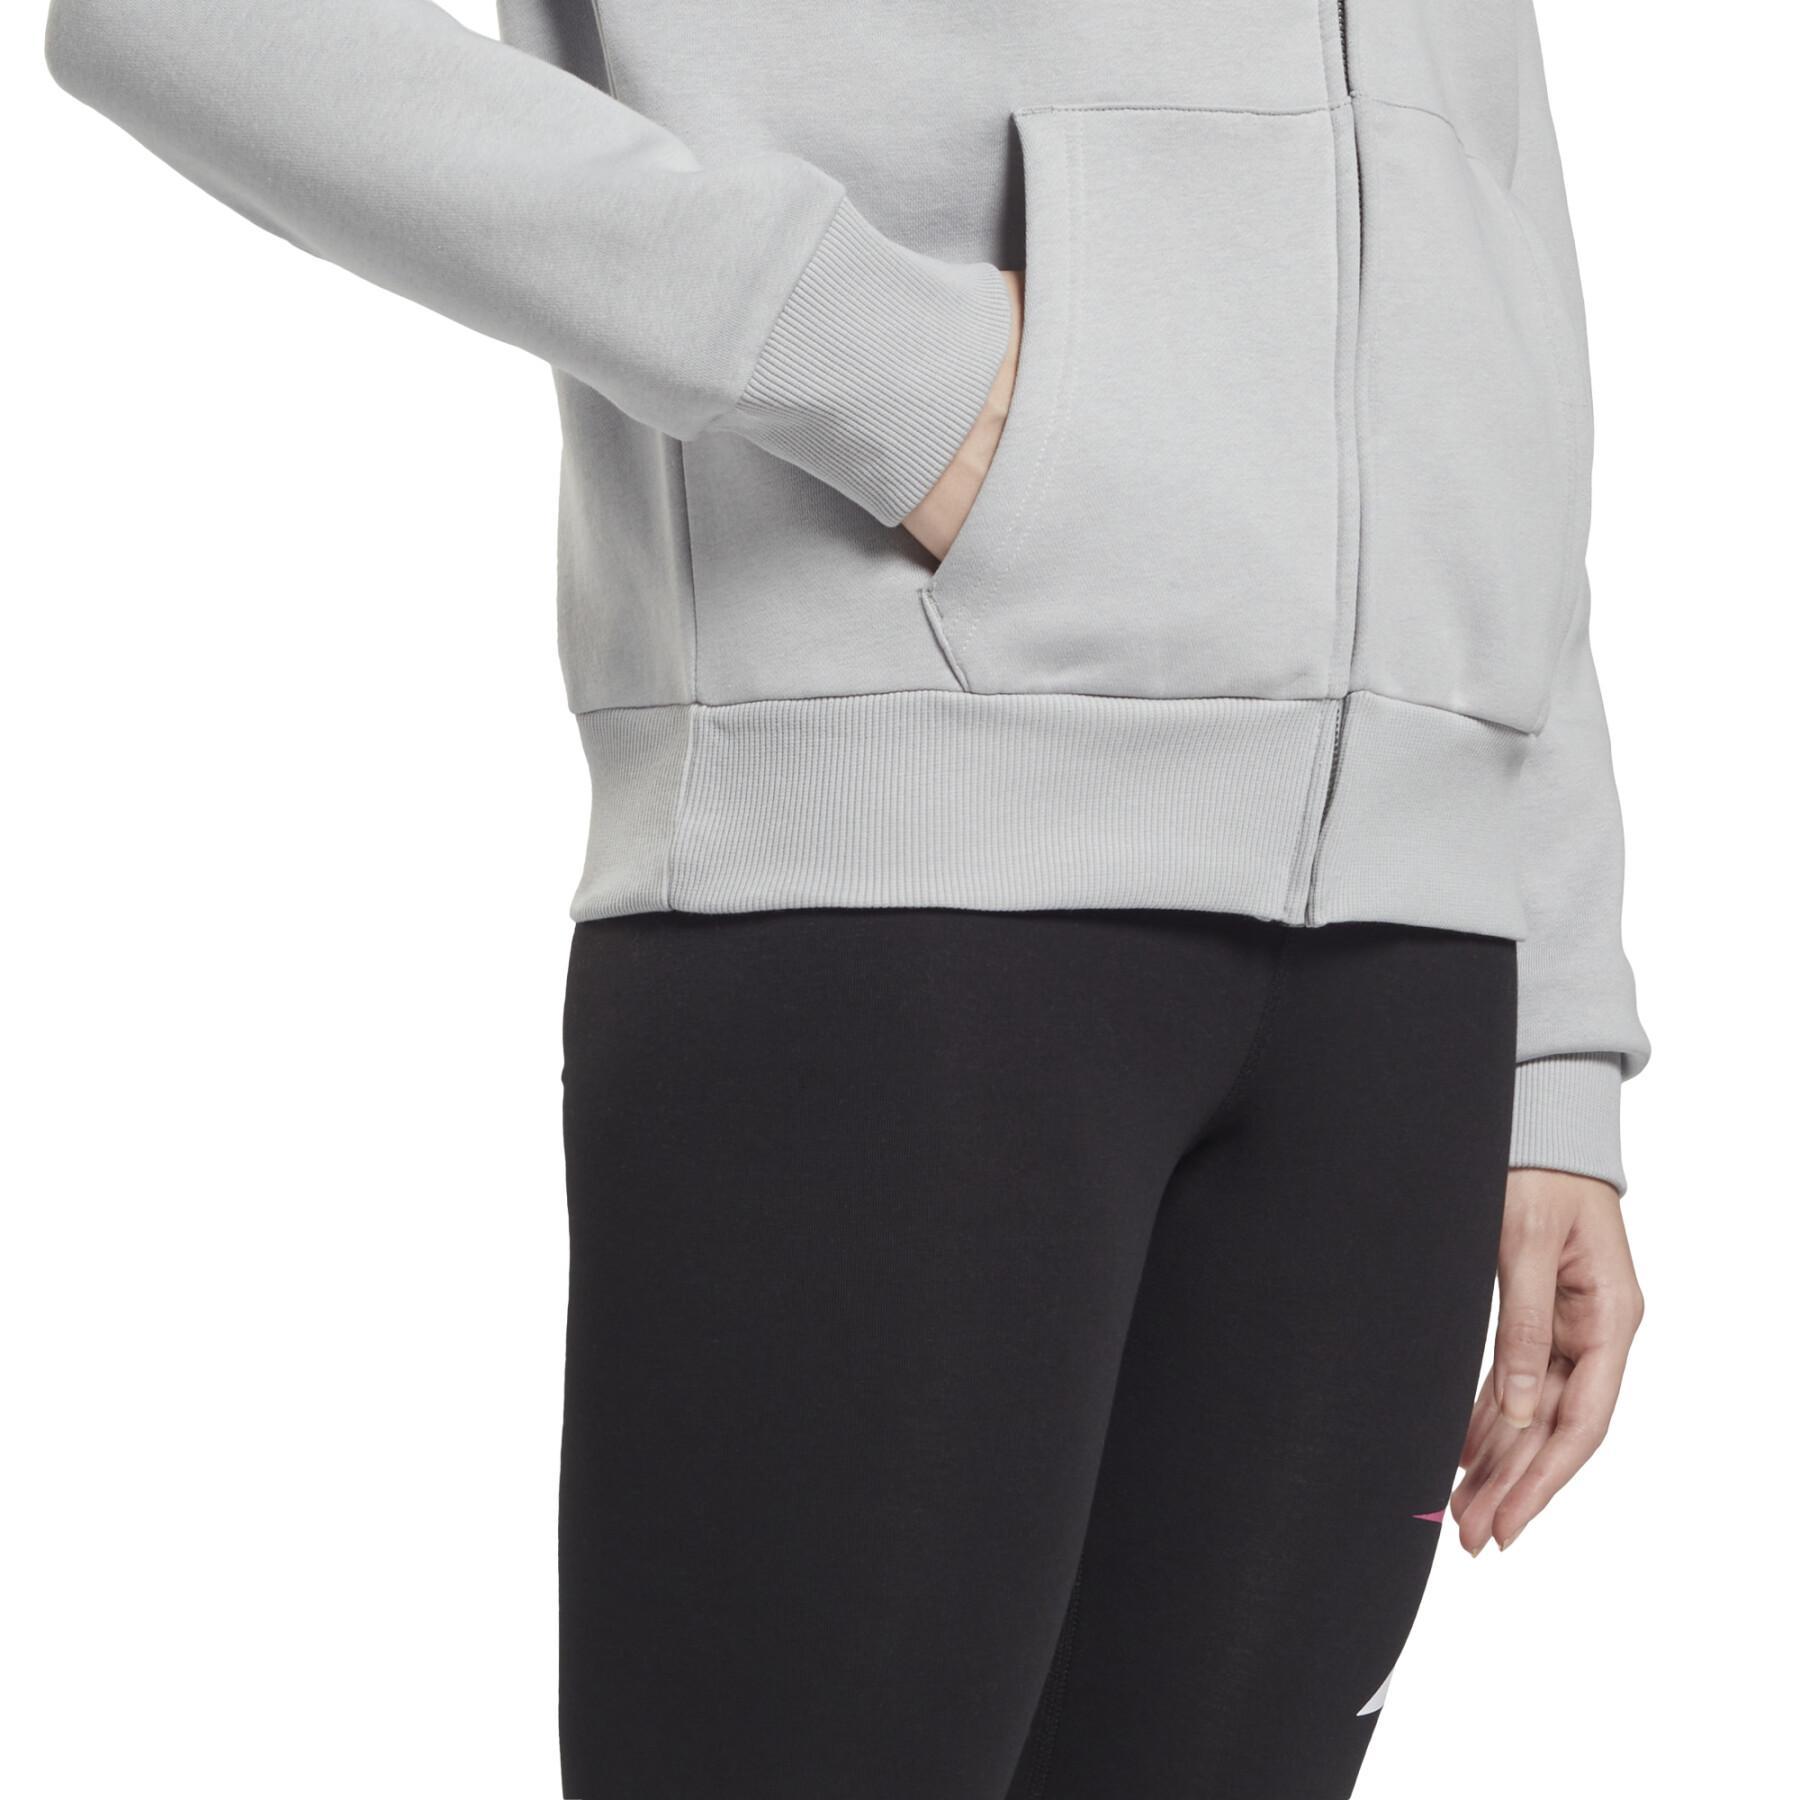 Sweatshirt mit Reißverschluss für Frauen Reebok Training Essentials Vector